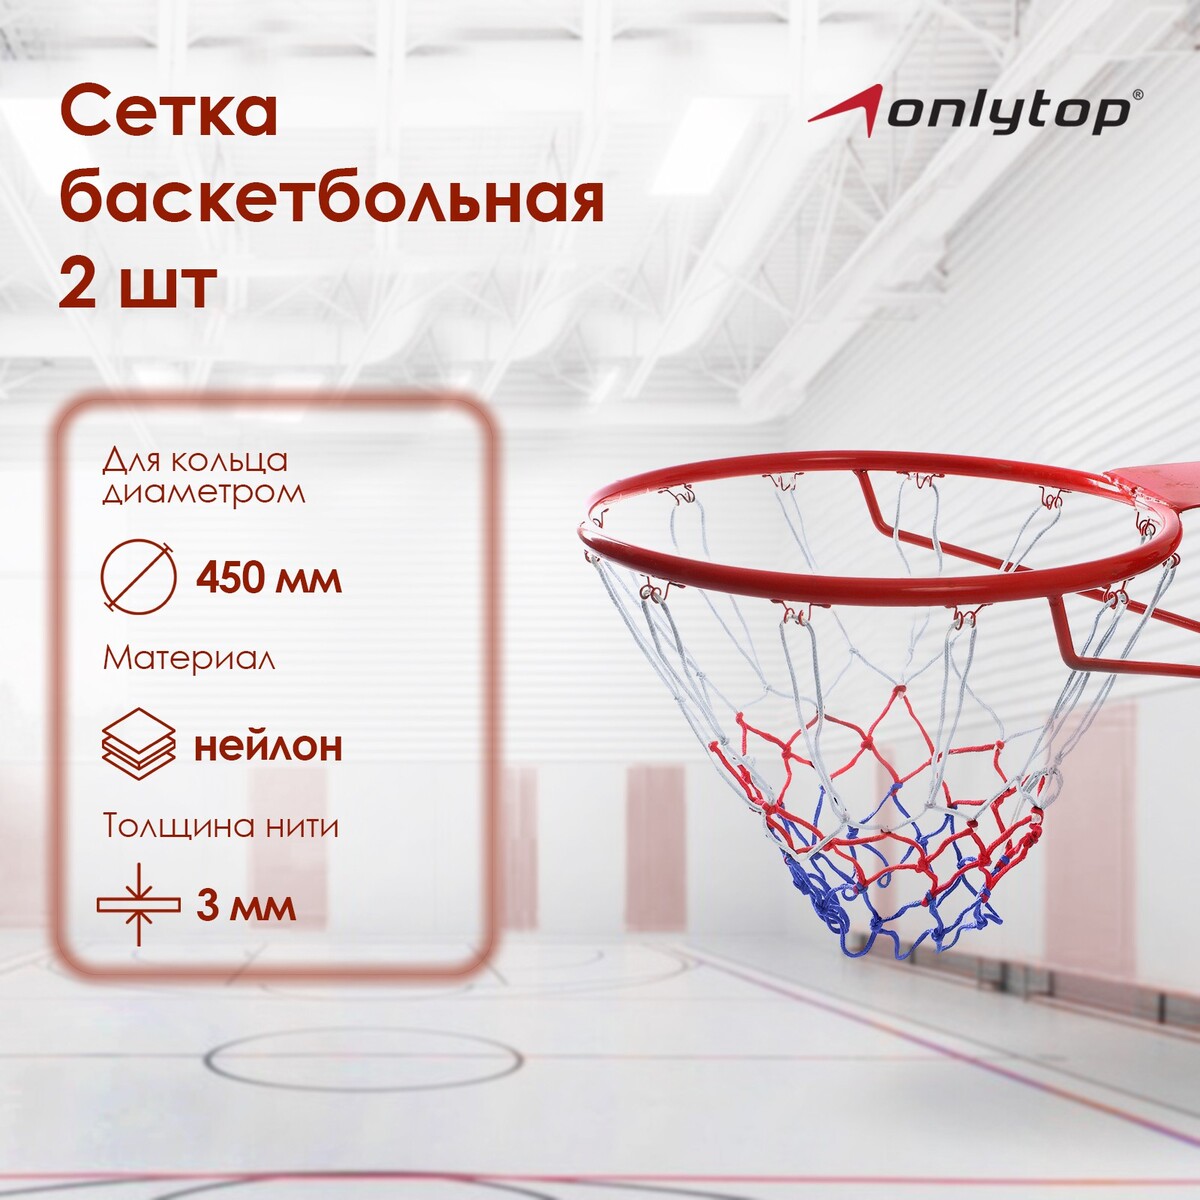 Сетка баскетбольная onlitop, 45 см, нить 3 мм, 2 шт. сетка для переноски мячей onlytop на 6 мячей нить 3 мм